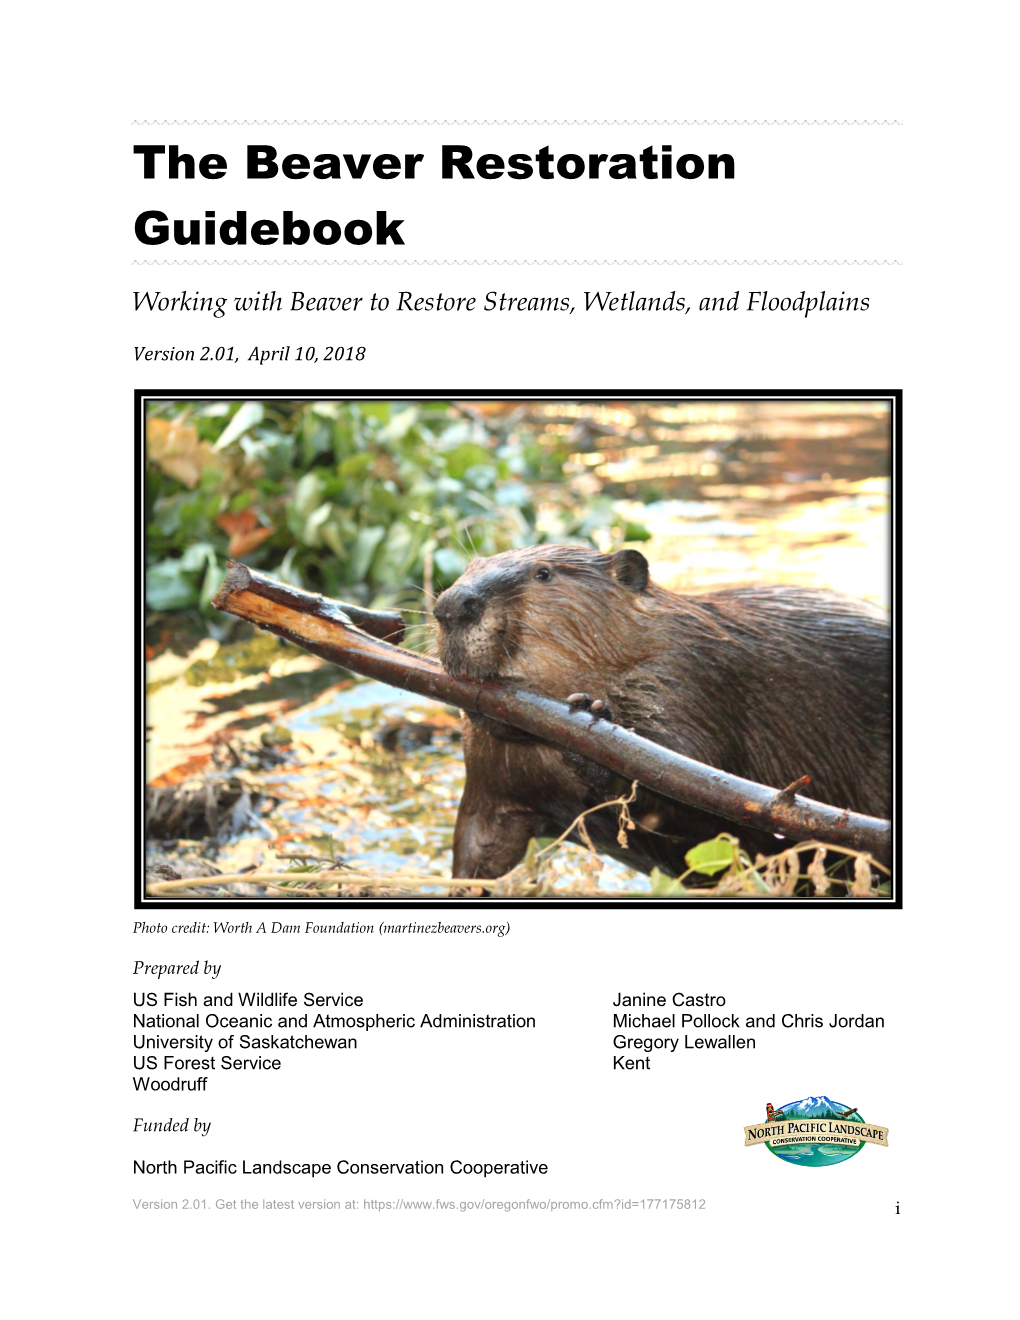 The Beaver Restoration Guidebook